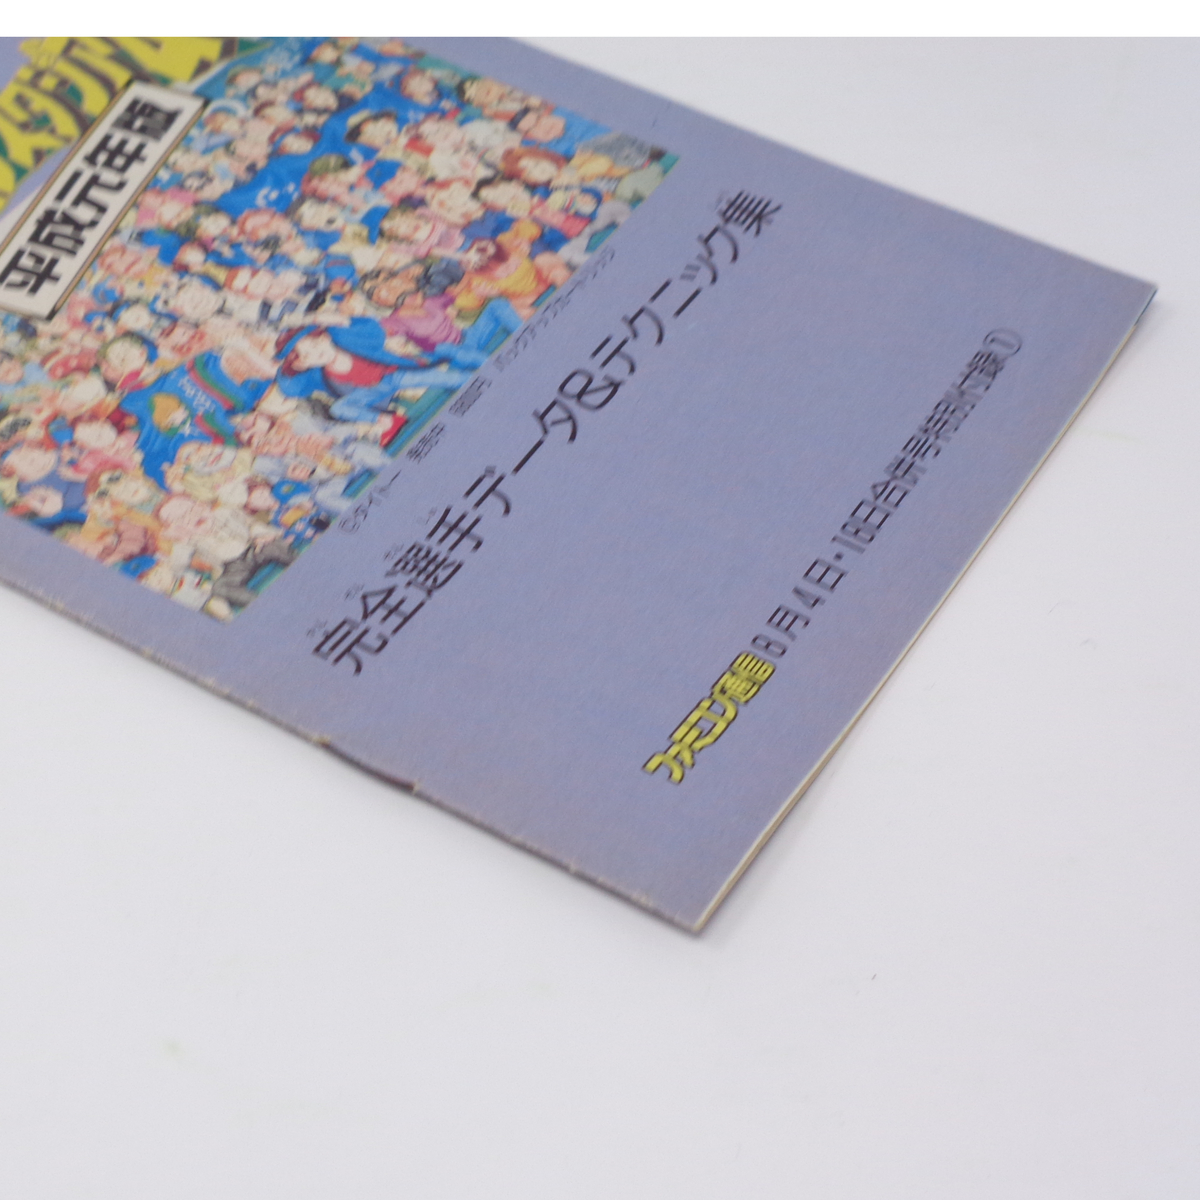  окончательный - li сверло Stadium эпоха Heisei изначальный год версия совершенно игрок данные & technique сборник Famicom сообщение 1989 год 8 месяц 4*18 день номер дополнение / игра журнал дополнение [Free Shipping]